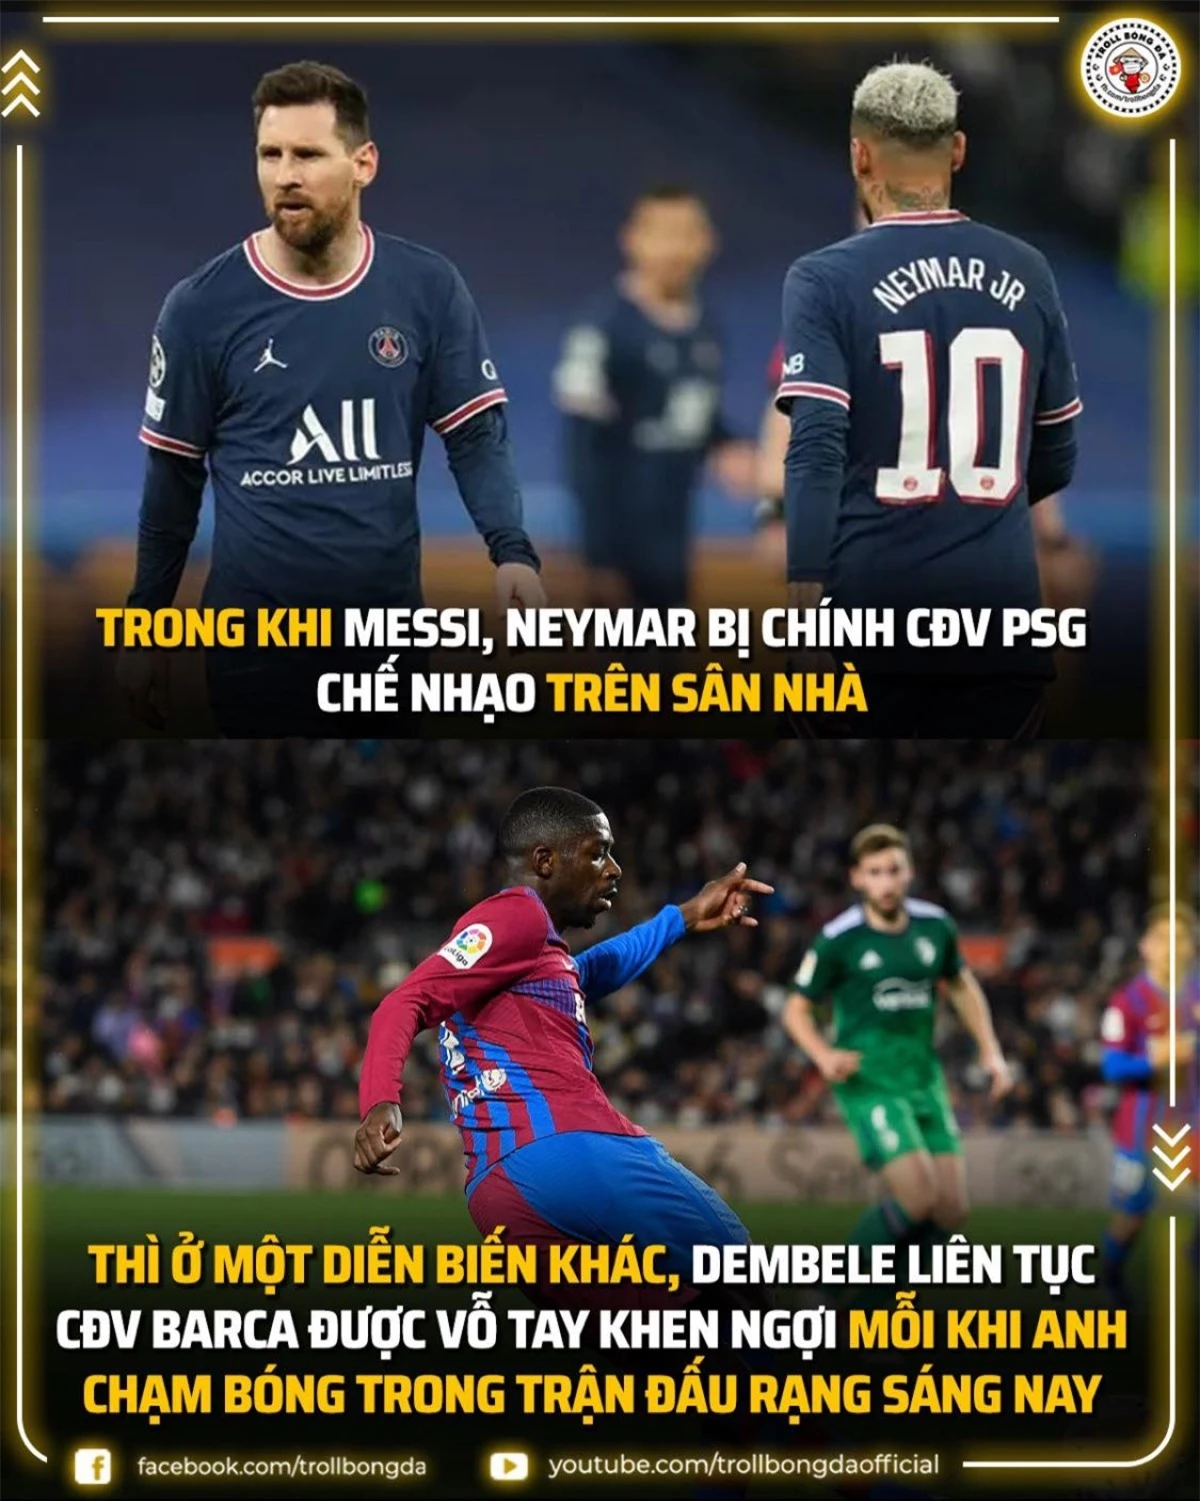 Messi bị la ó khi thi đấu cho PSG trong khi các CĐV Barca khen ngợi Dembele. (Ảnh: Troll Bóng đá).